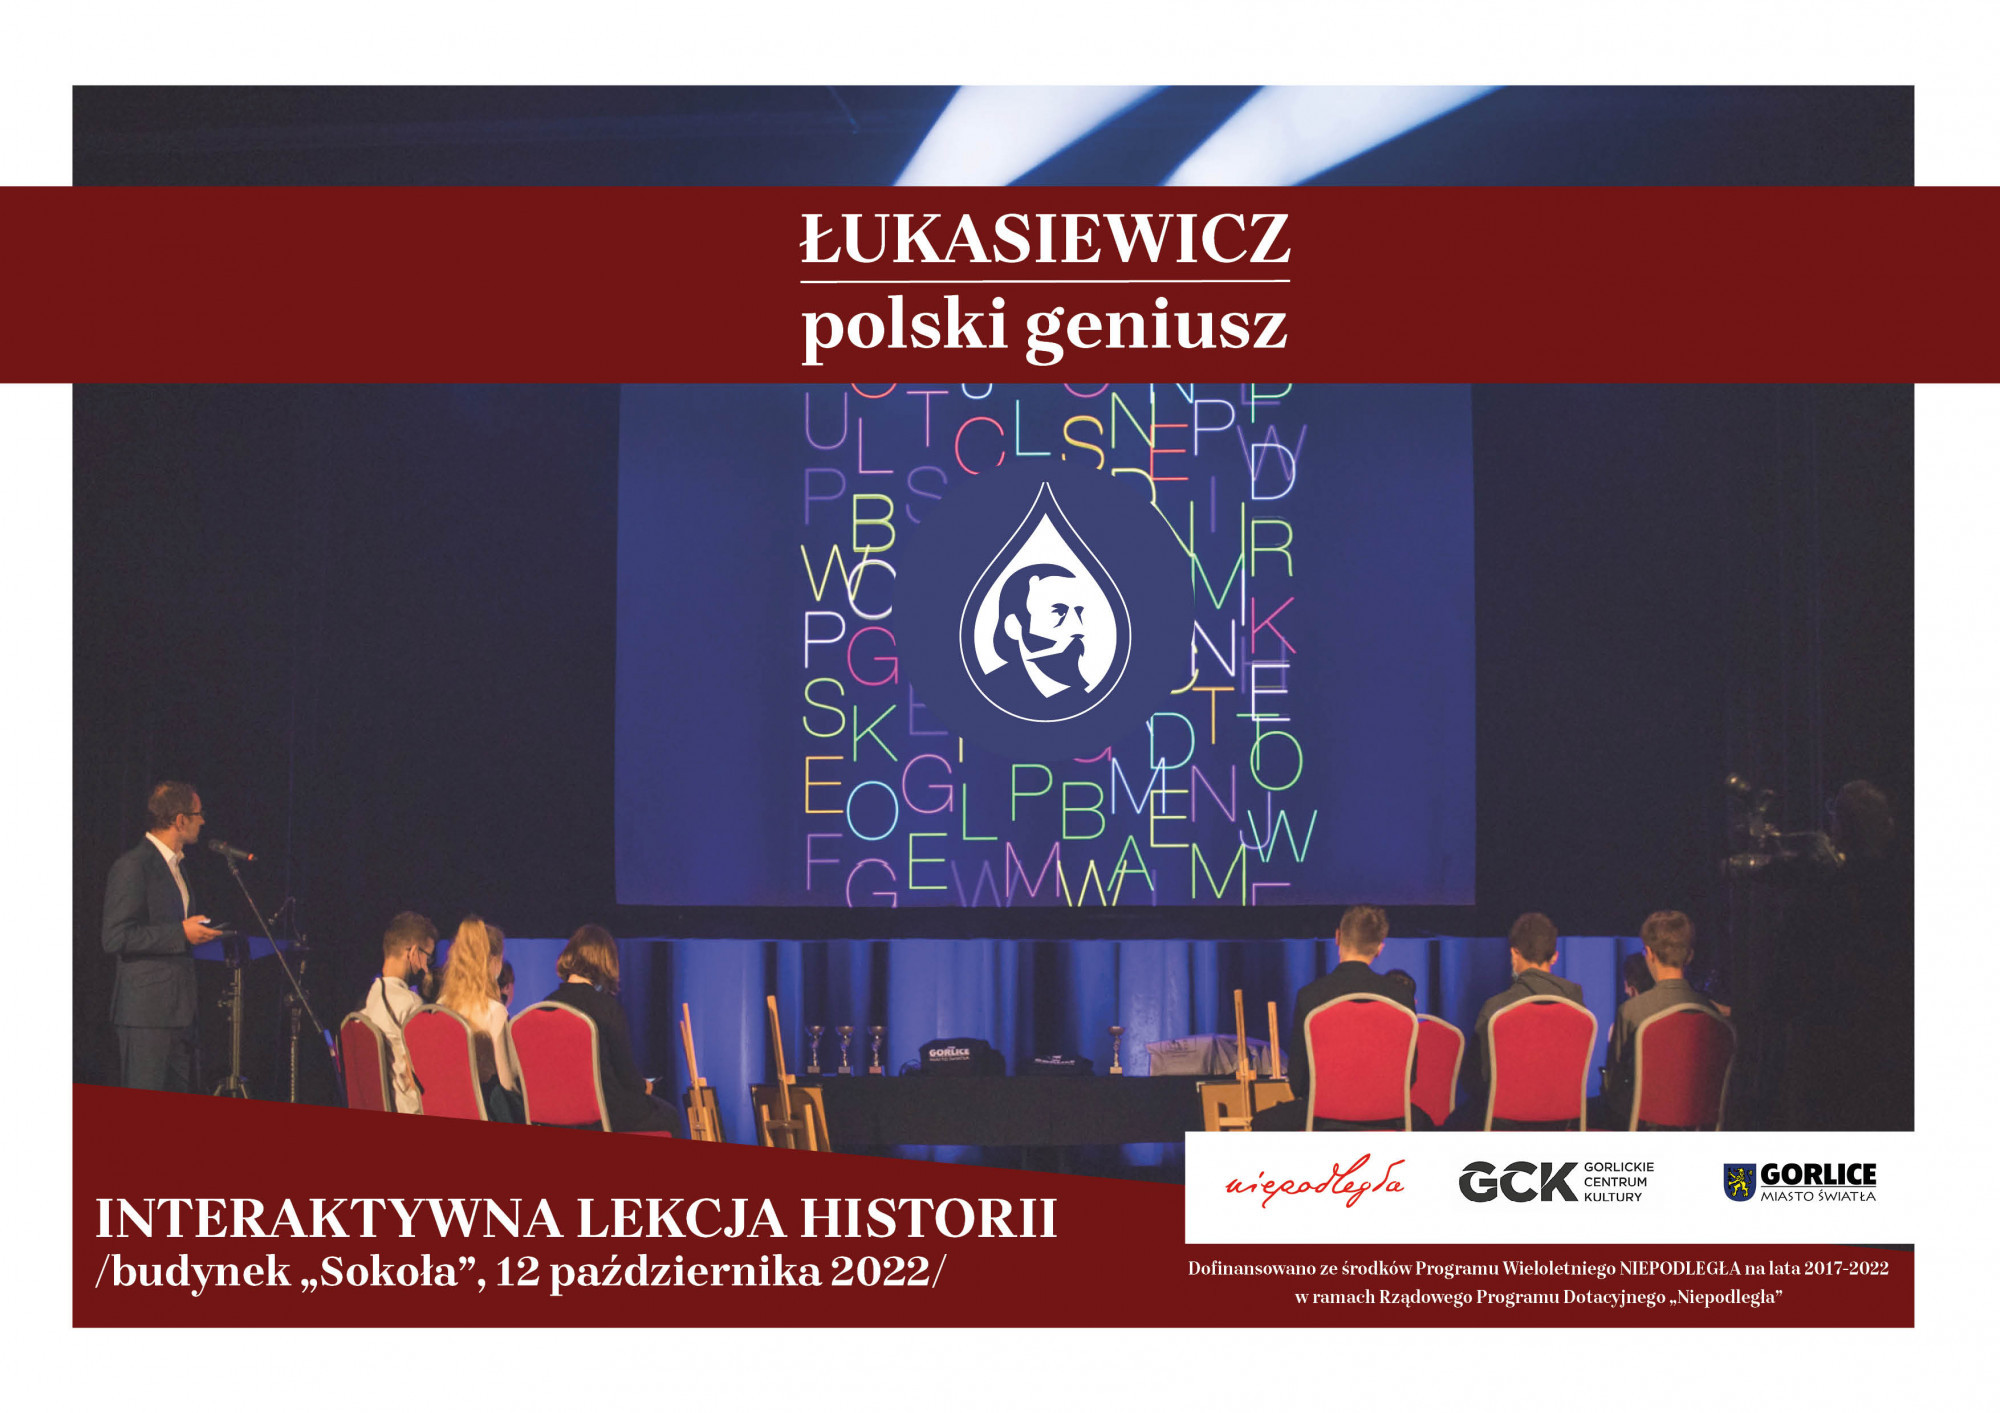 Interaktywna lekcja historii o Ignacym Łukasiewiczu na żywo